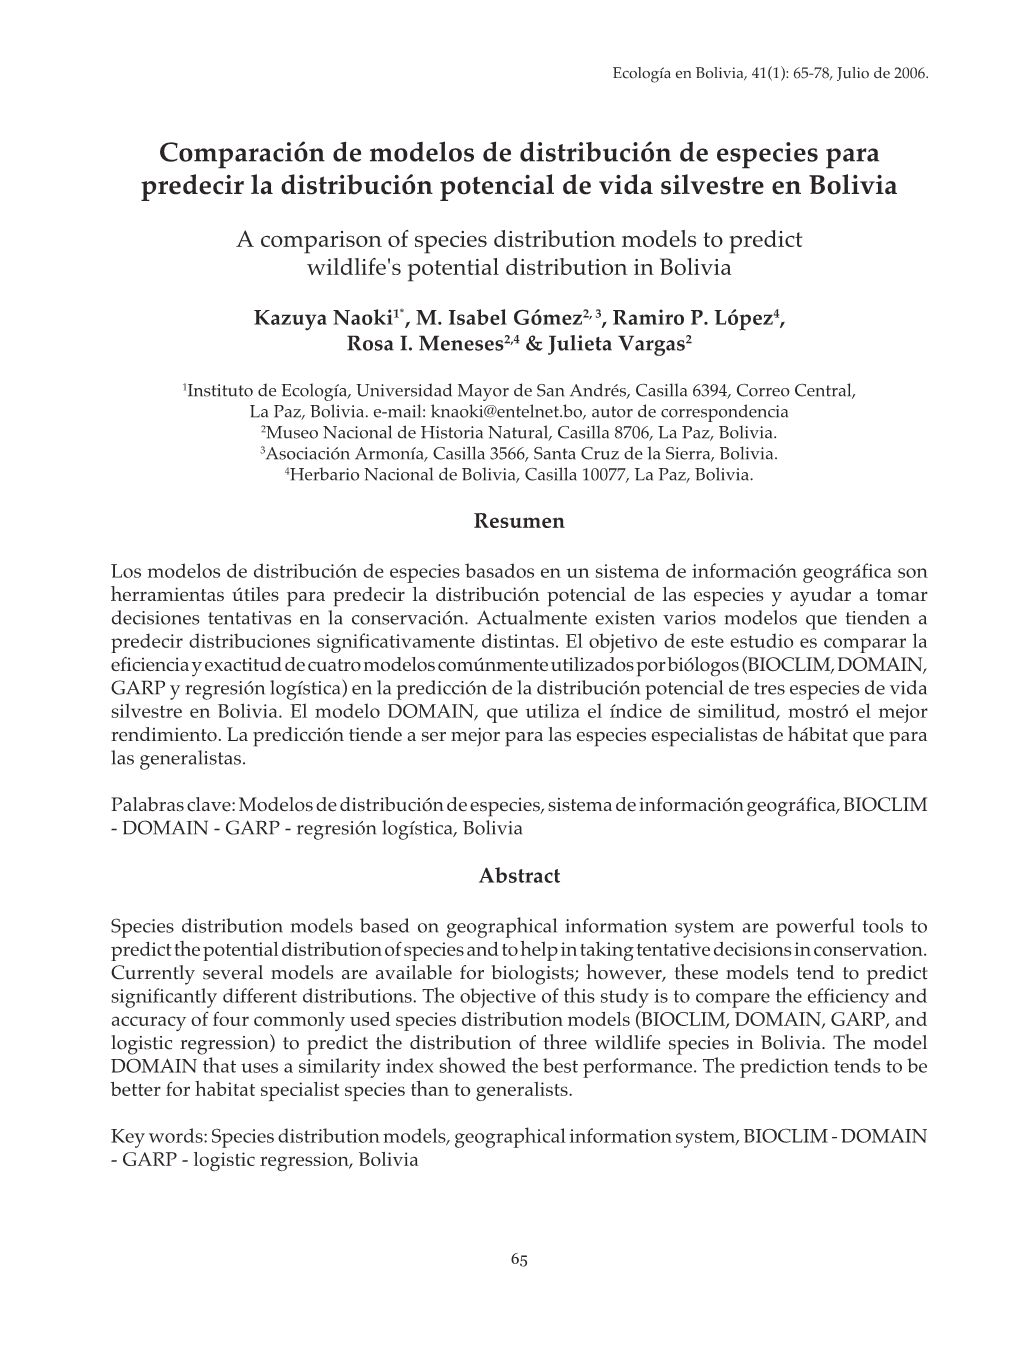 Comparación De Modelos De Distribución De Especies Para Predecir La Distribución Potencial De Vida Silvestre En Bolivia